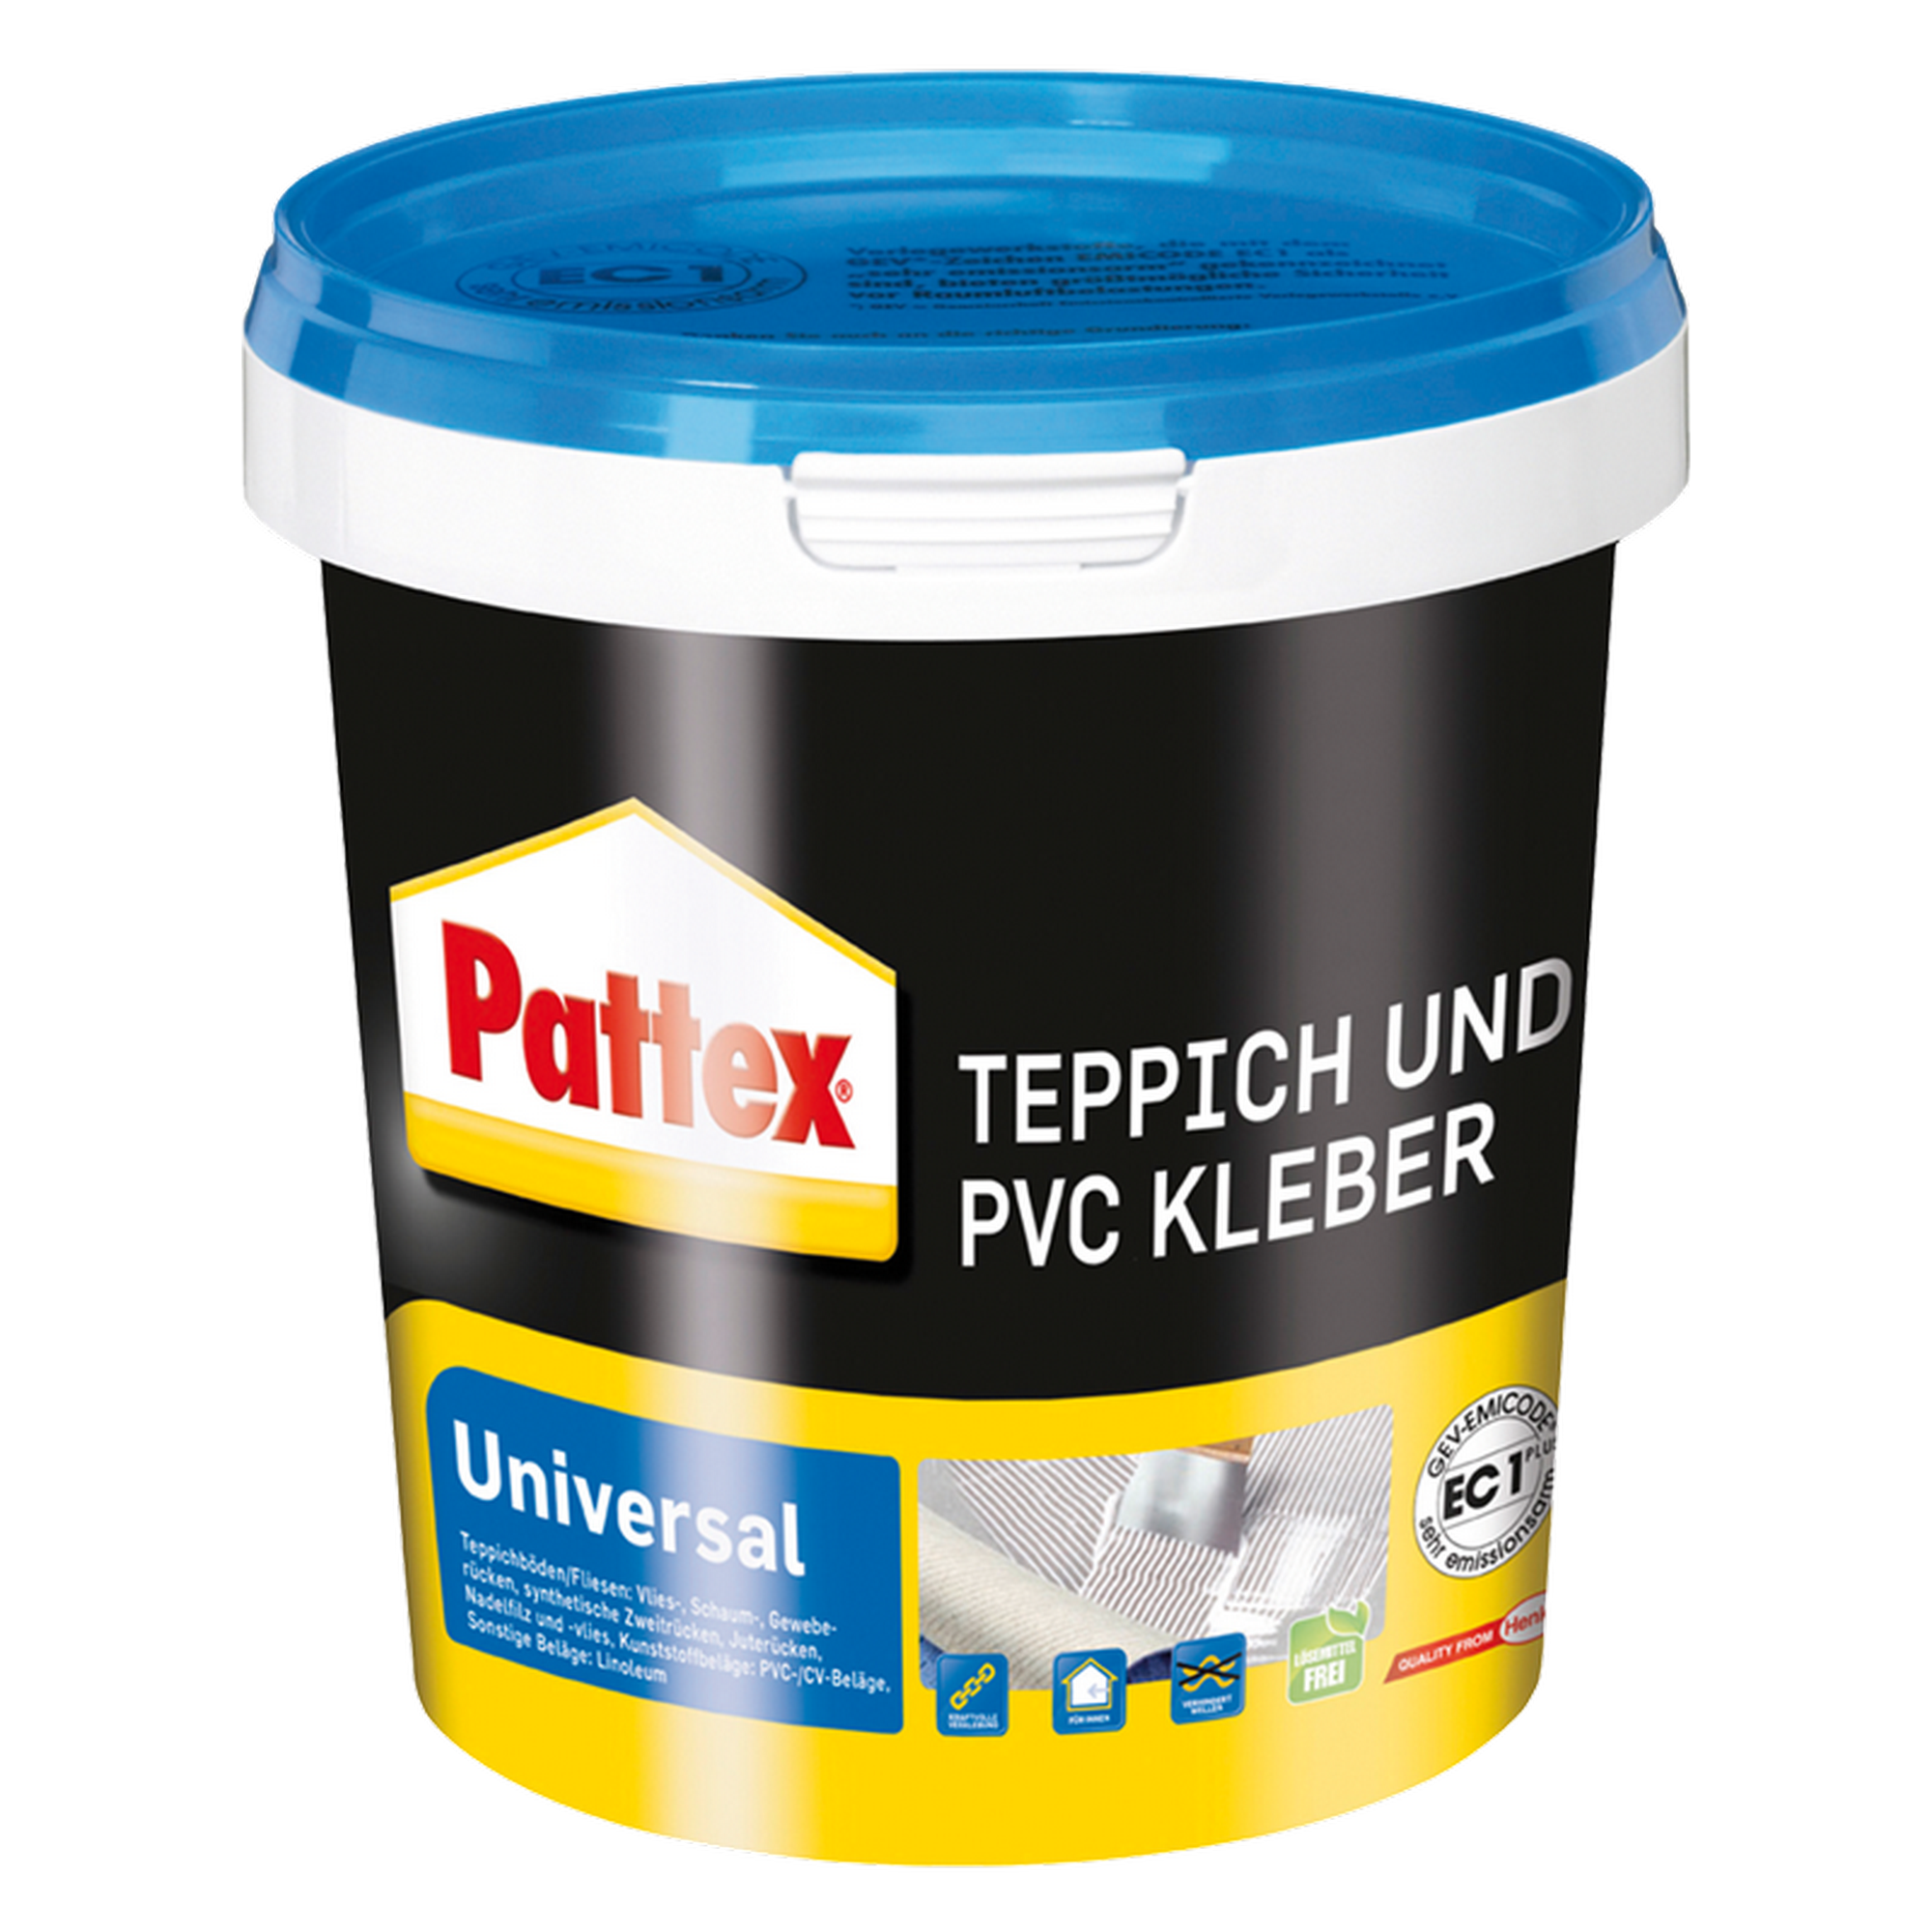 Teppich- und PVC-Kleber 'Universal' weiß 1 kg + product picture